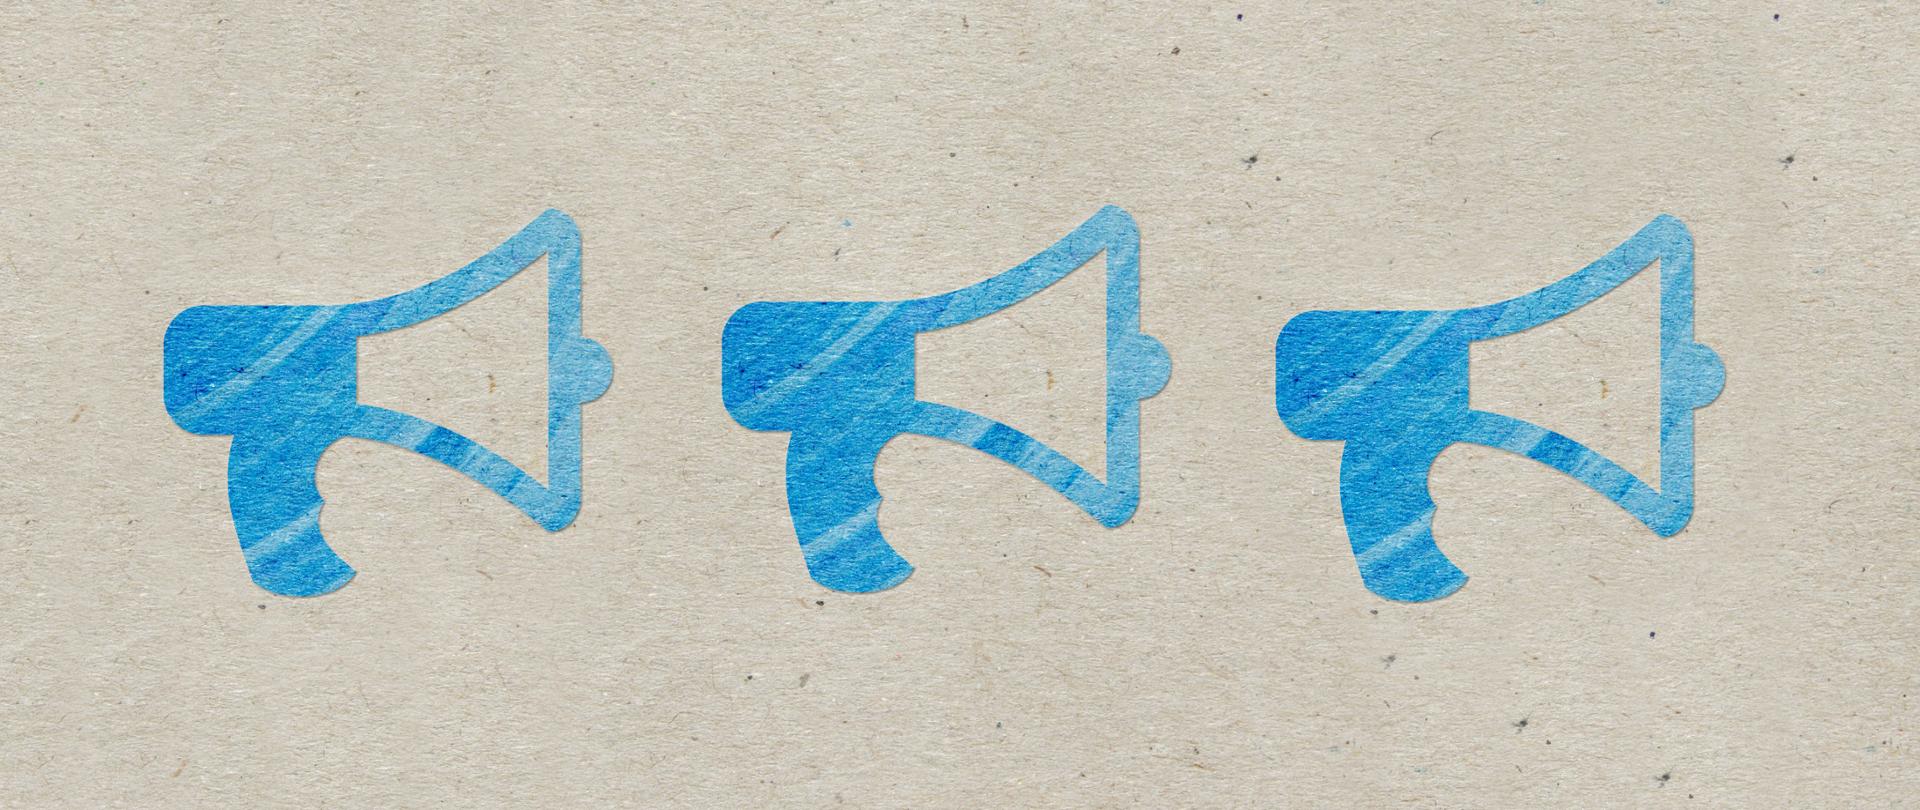 Trzy ikony w kolorze niebieskim przedstawiające megafon.